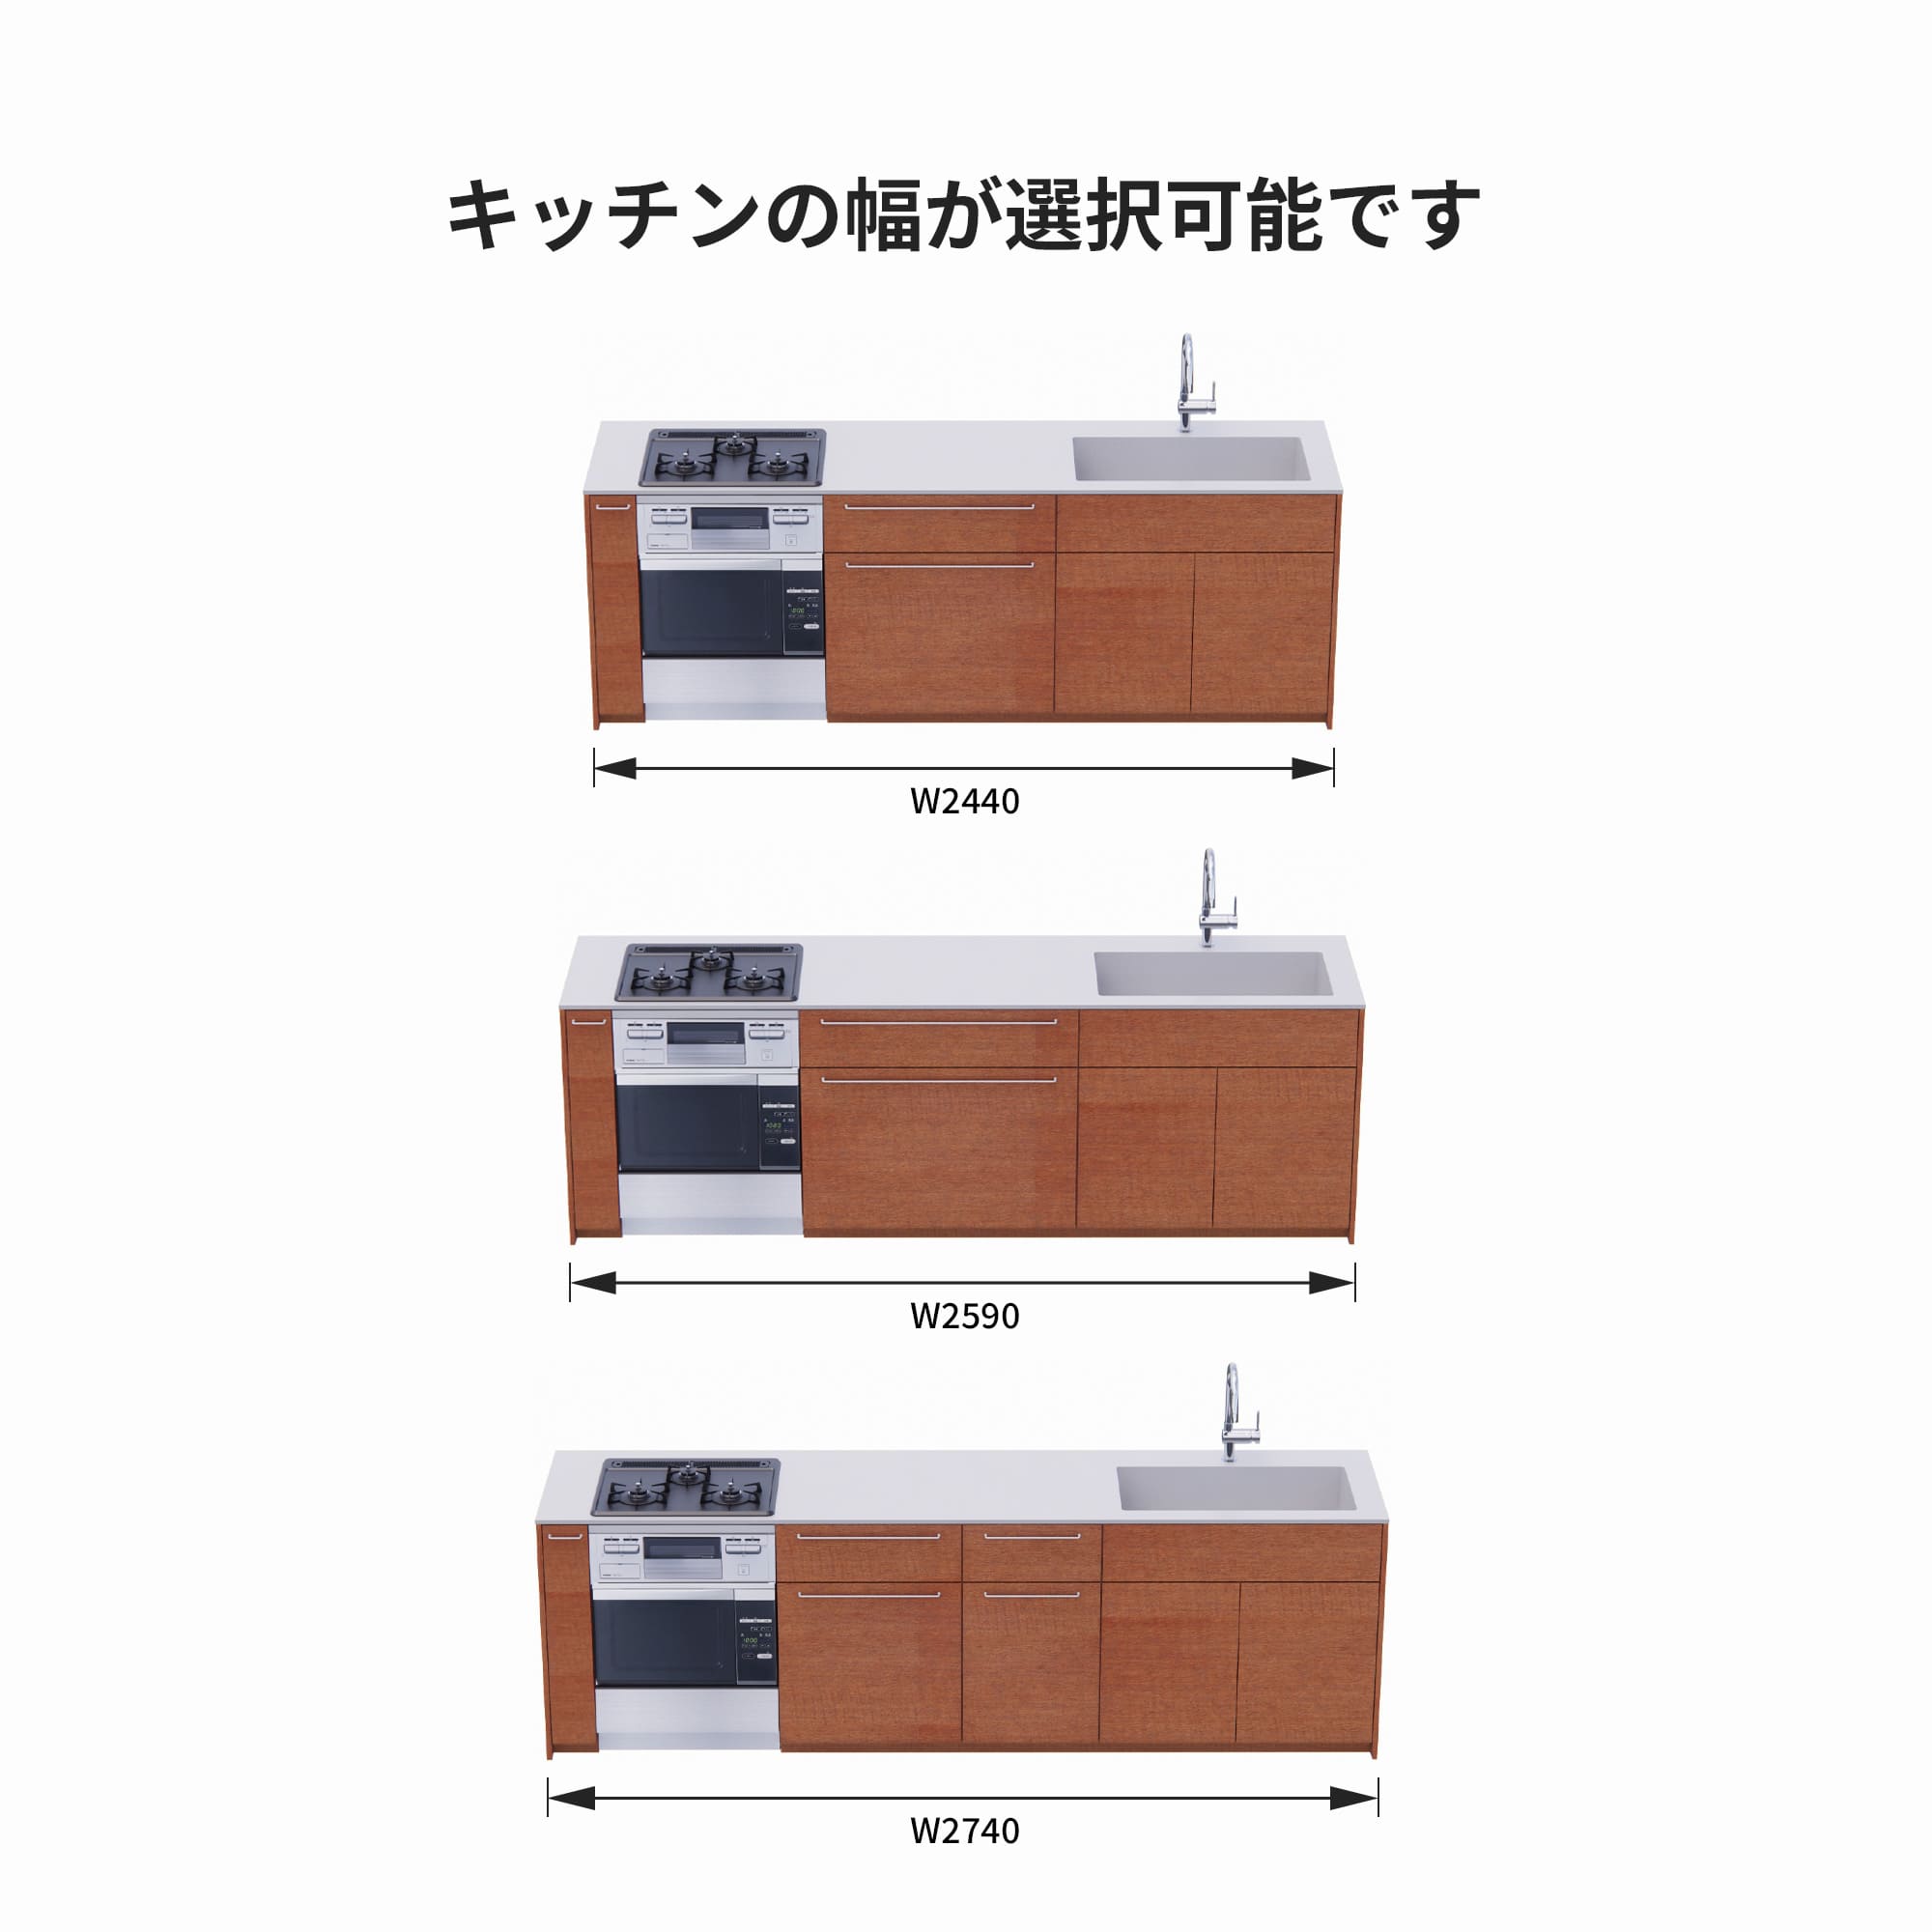 木製システムキッチン 壁付け型 W2440～2740・コンロあり / オーブンあり / 食洗機なし KB-KC022-25-G183